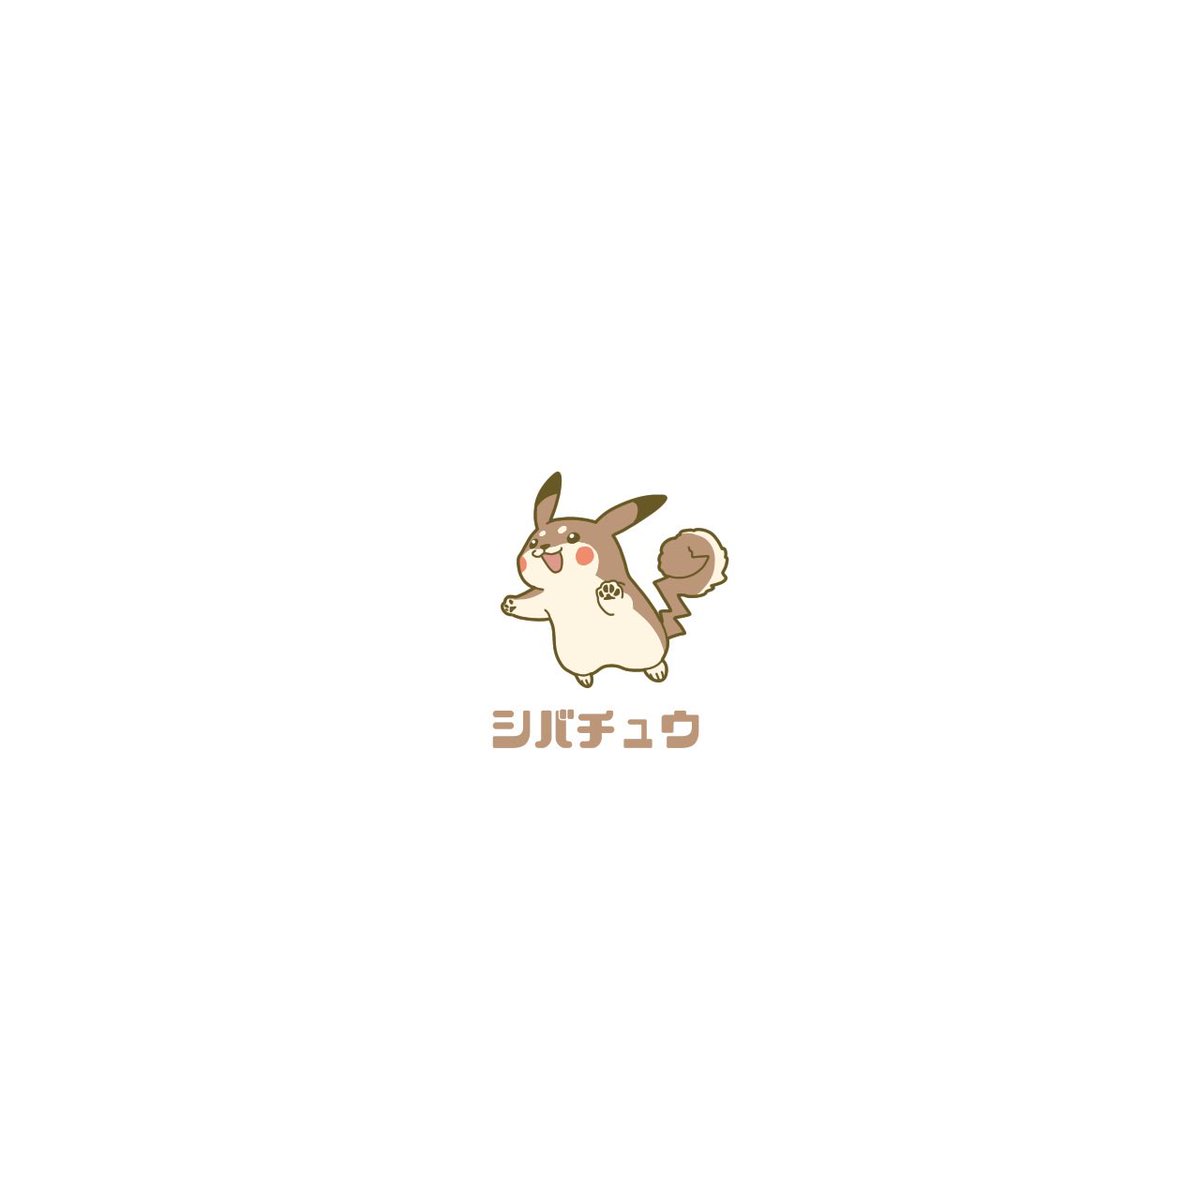 no humans bone white background pokemon (creature) solo simple background dog  illustration images